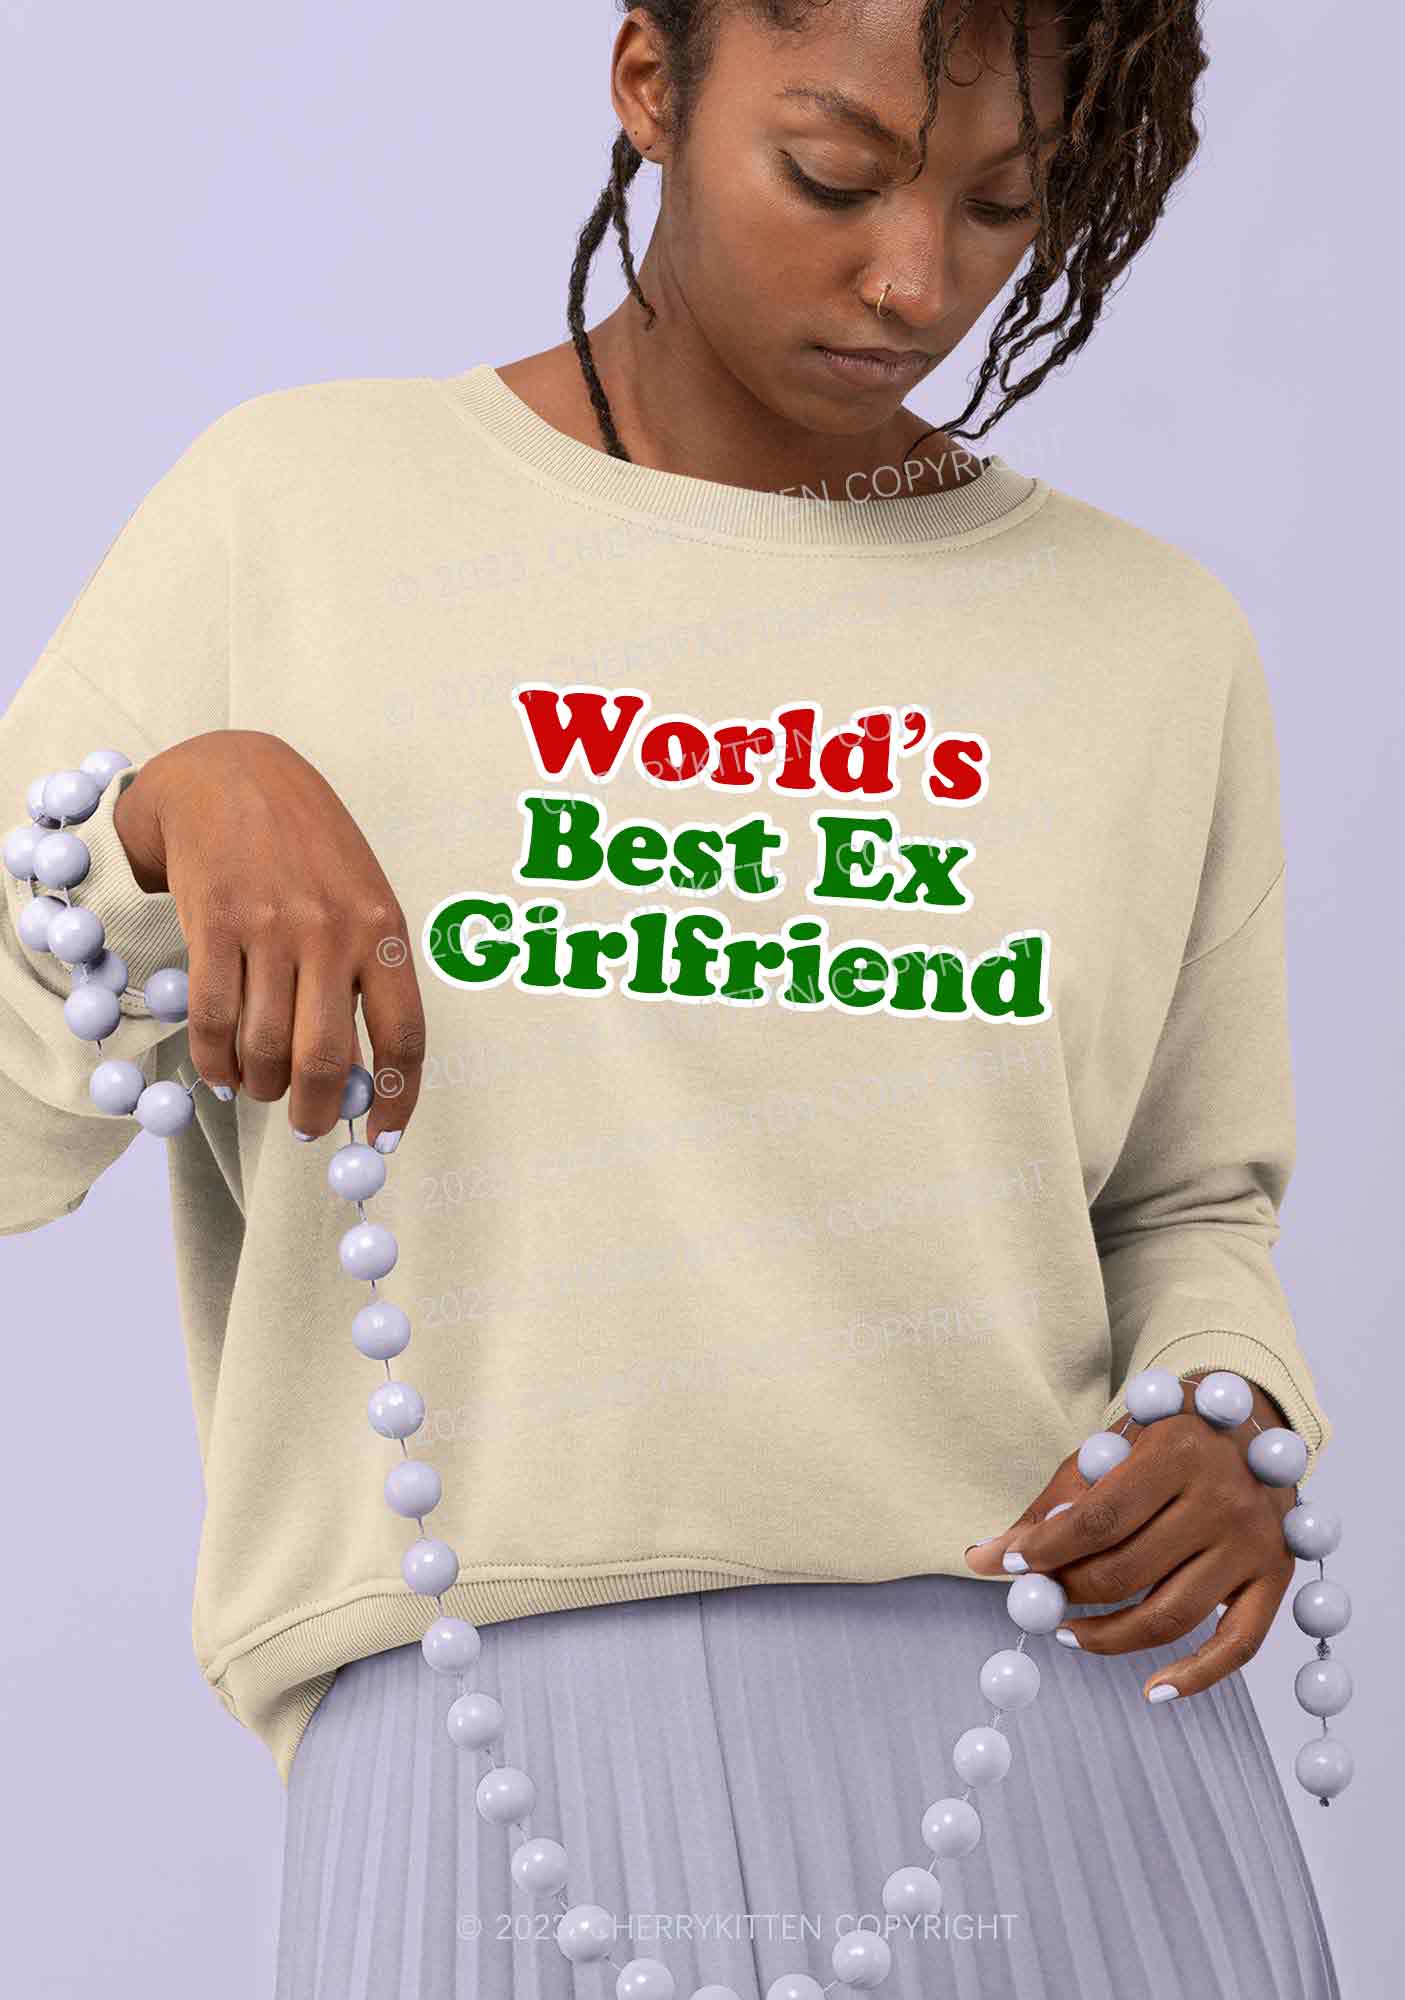 Best Ex Girlfriend Christmas Y2K Sweatshirt Cherrykitten